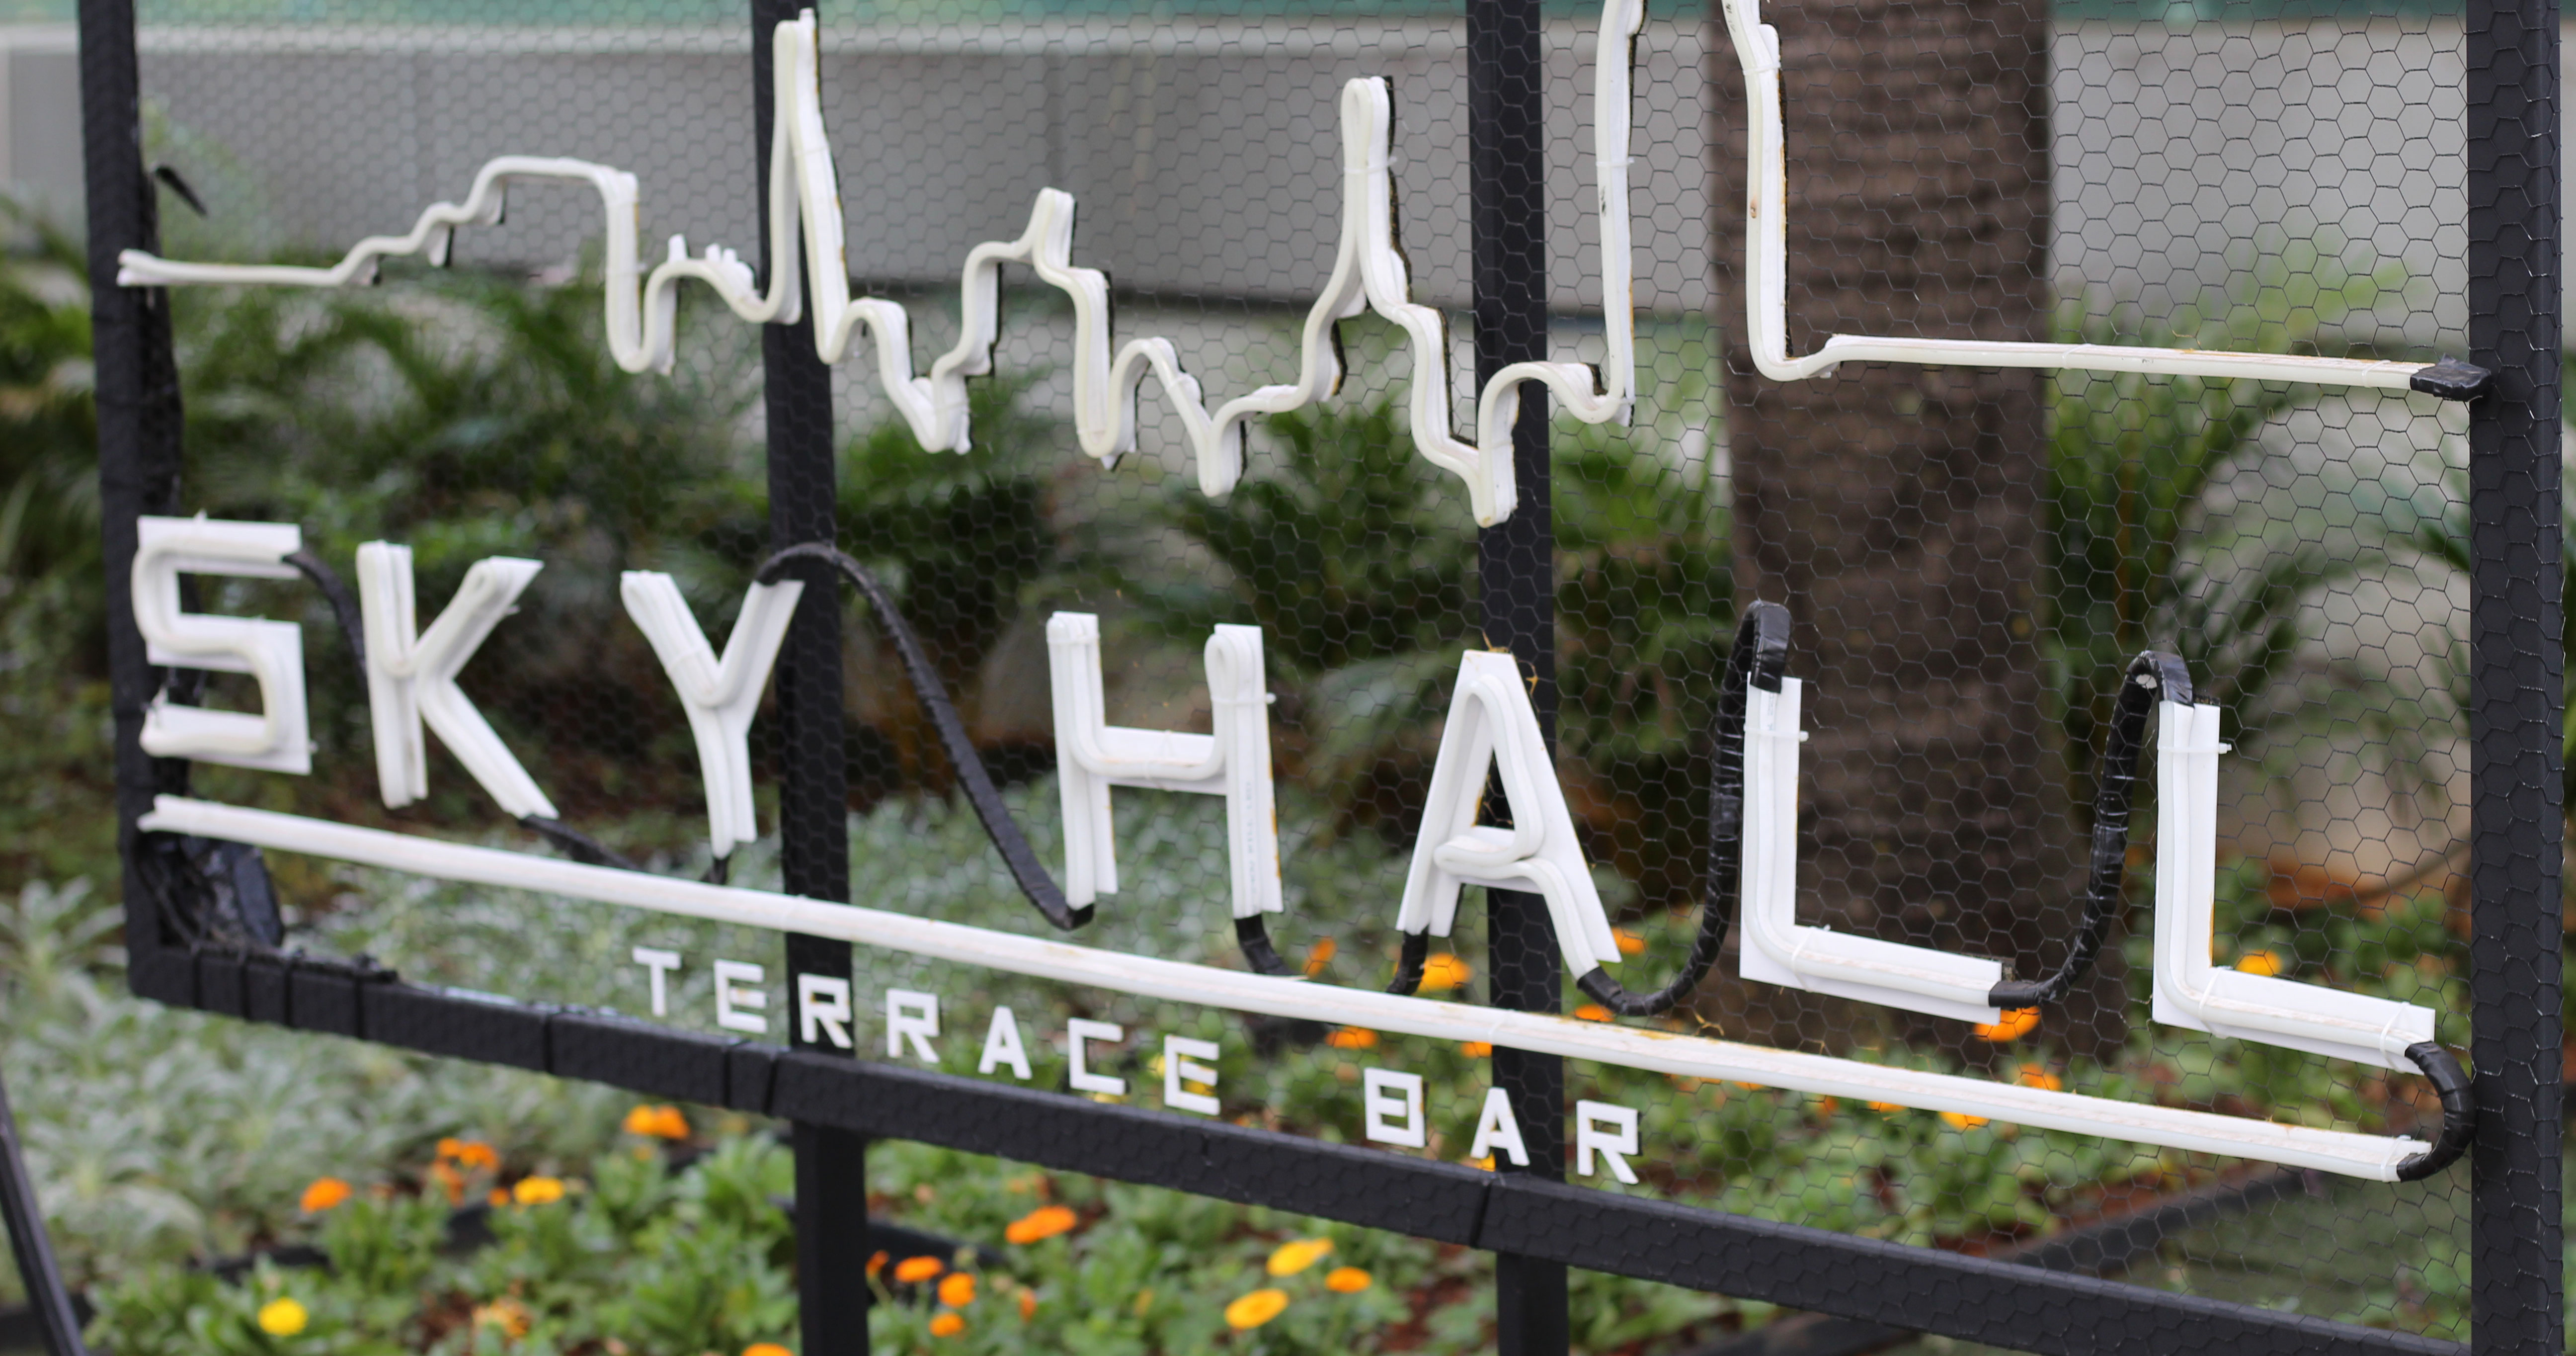 SKY HALL Terrace Bar promove Festa de Los Muertos  Eventos BaresSP 570x300 imagem